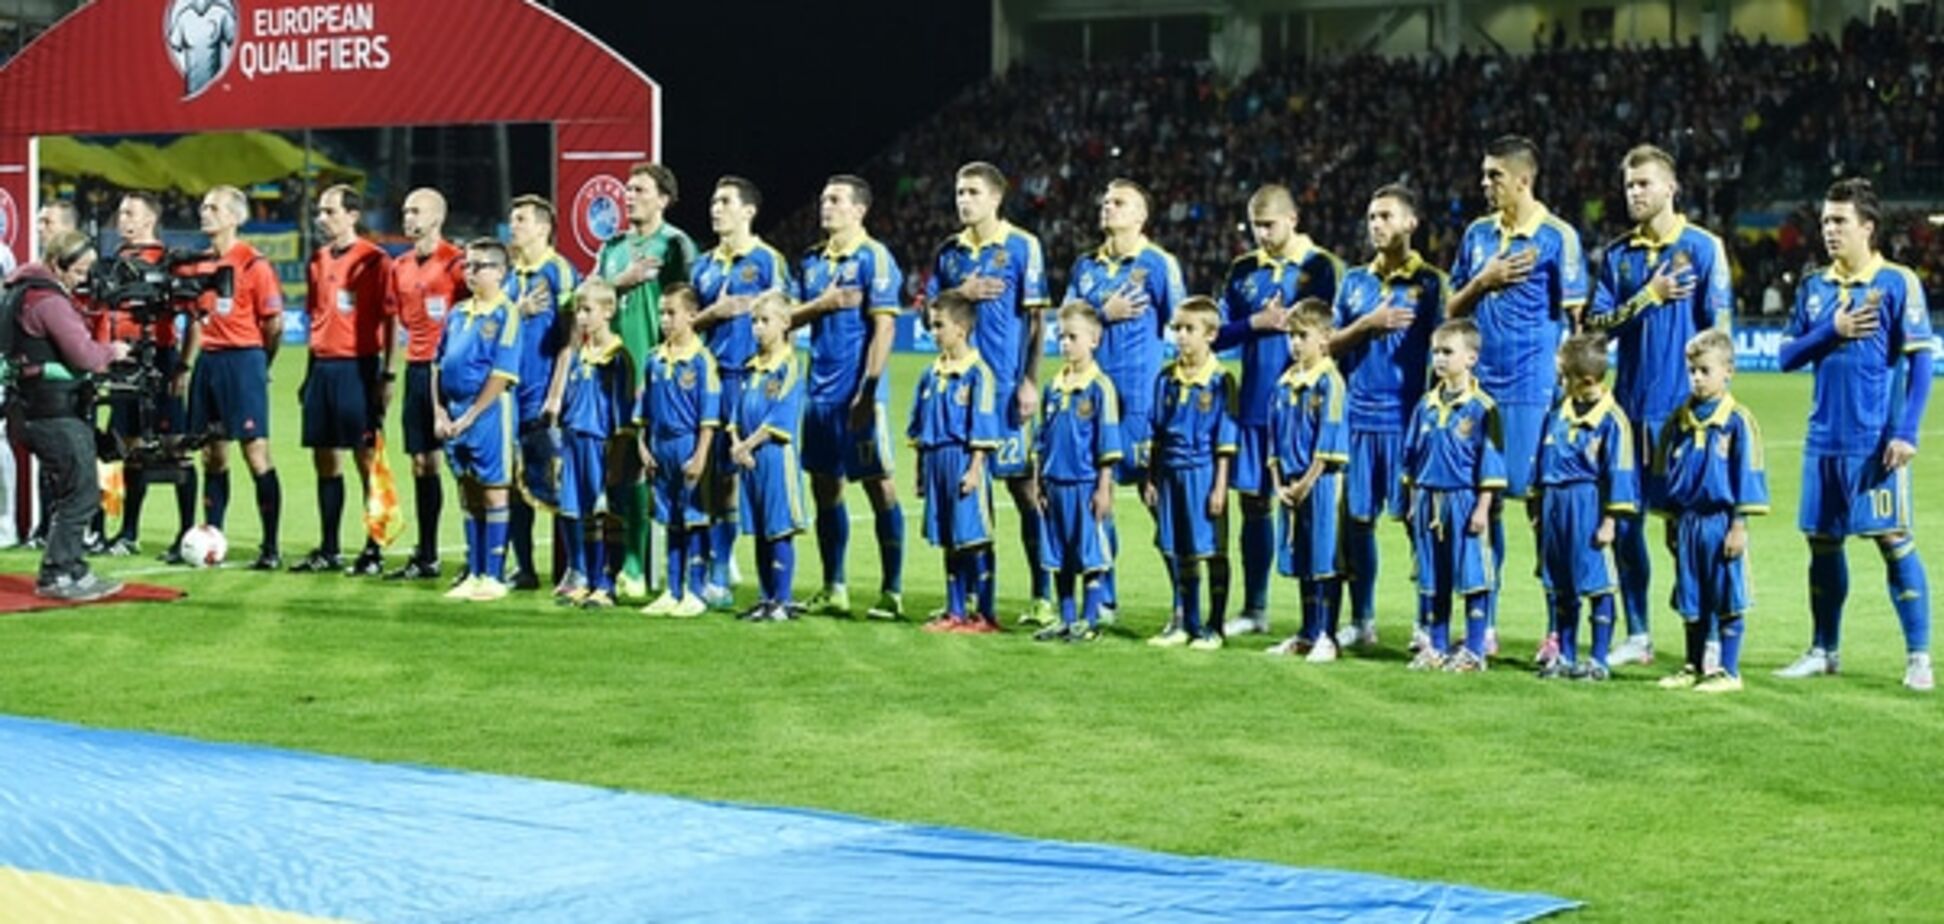 Позбутися ілюзій. 5 висновків після матчу Словаччина - Україна